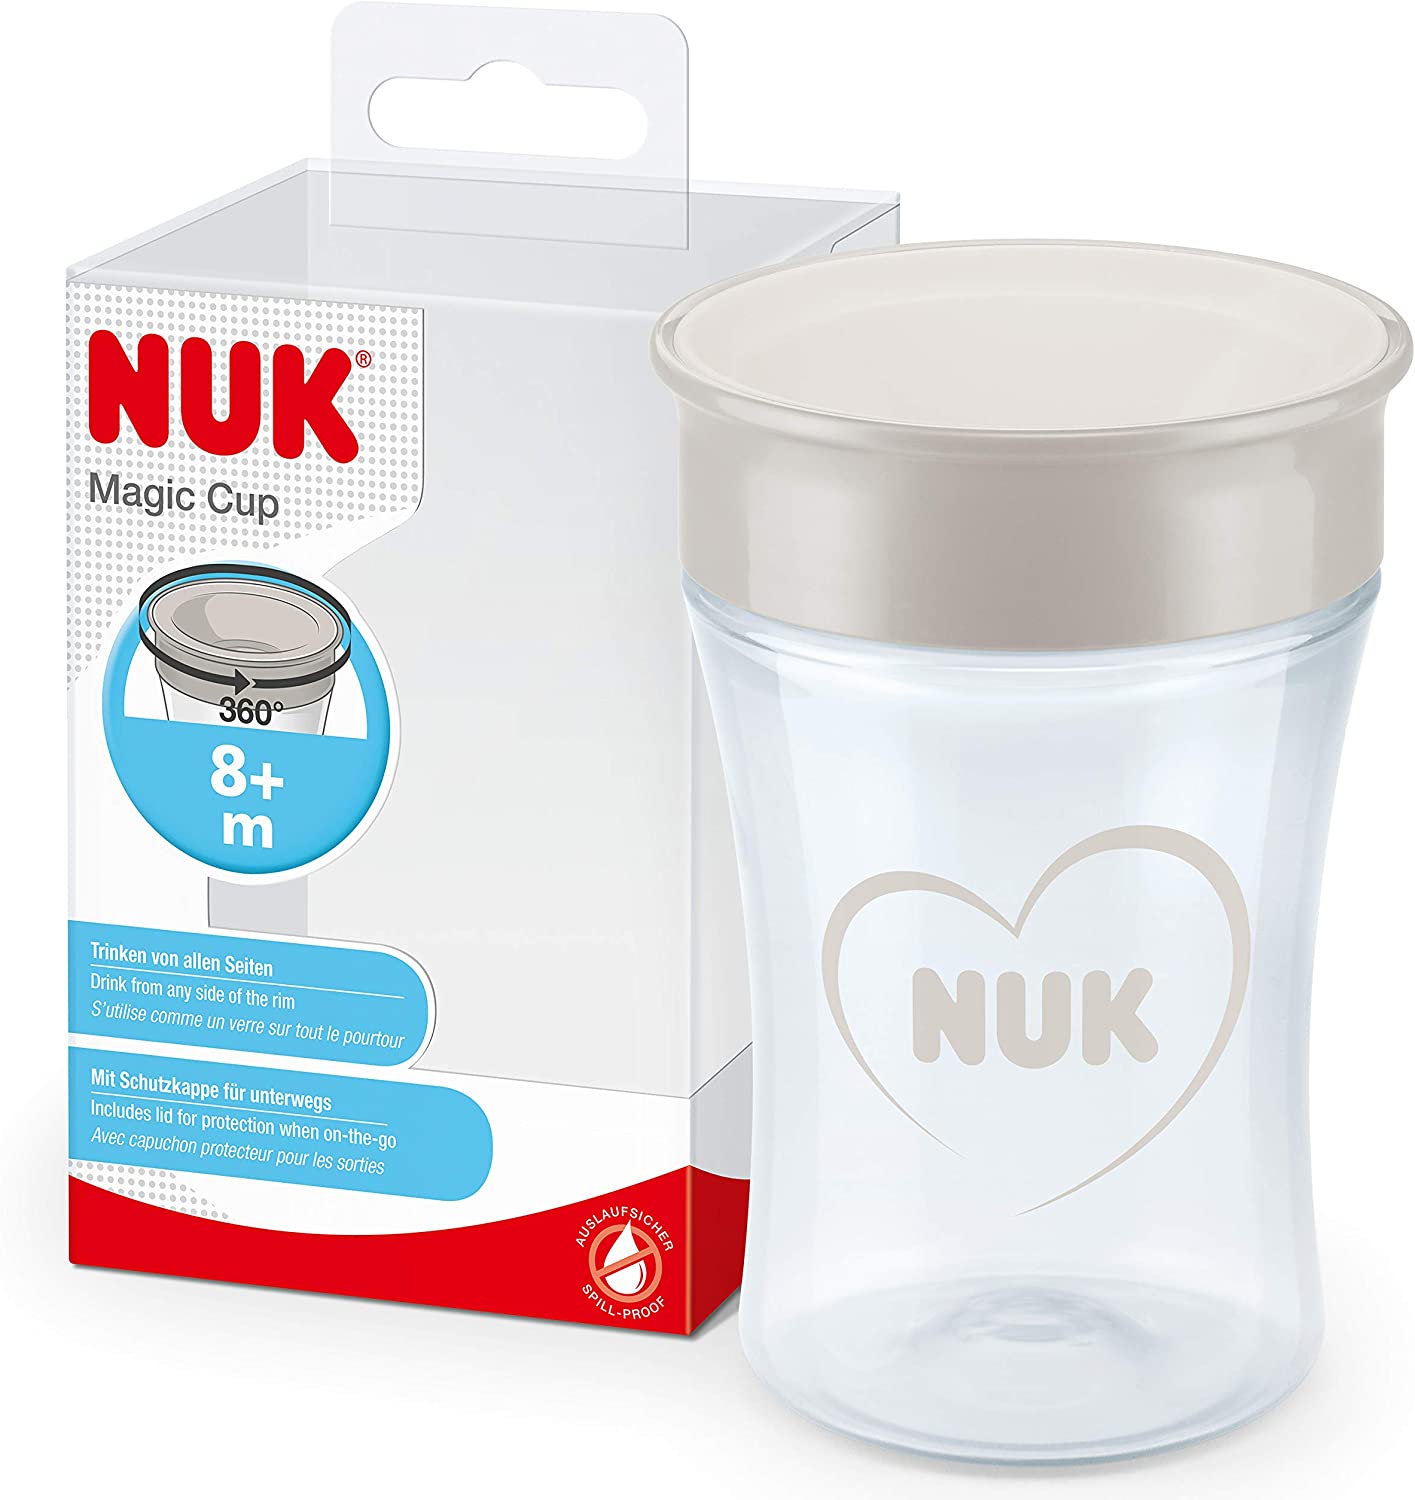 NUK Magic Cup bicchiere antigoccia | Bordo anti-rovesciamento a 360° | 8+ mesi | Senza BPA | 230 ml | Tigre (blu)